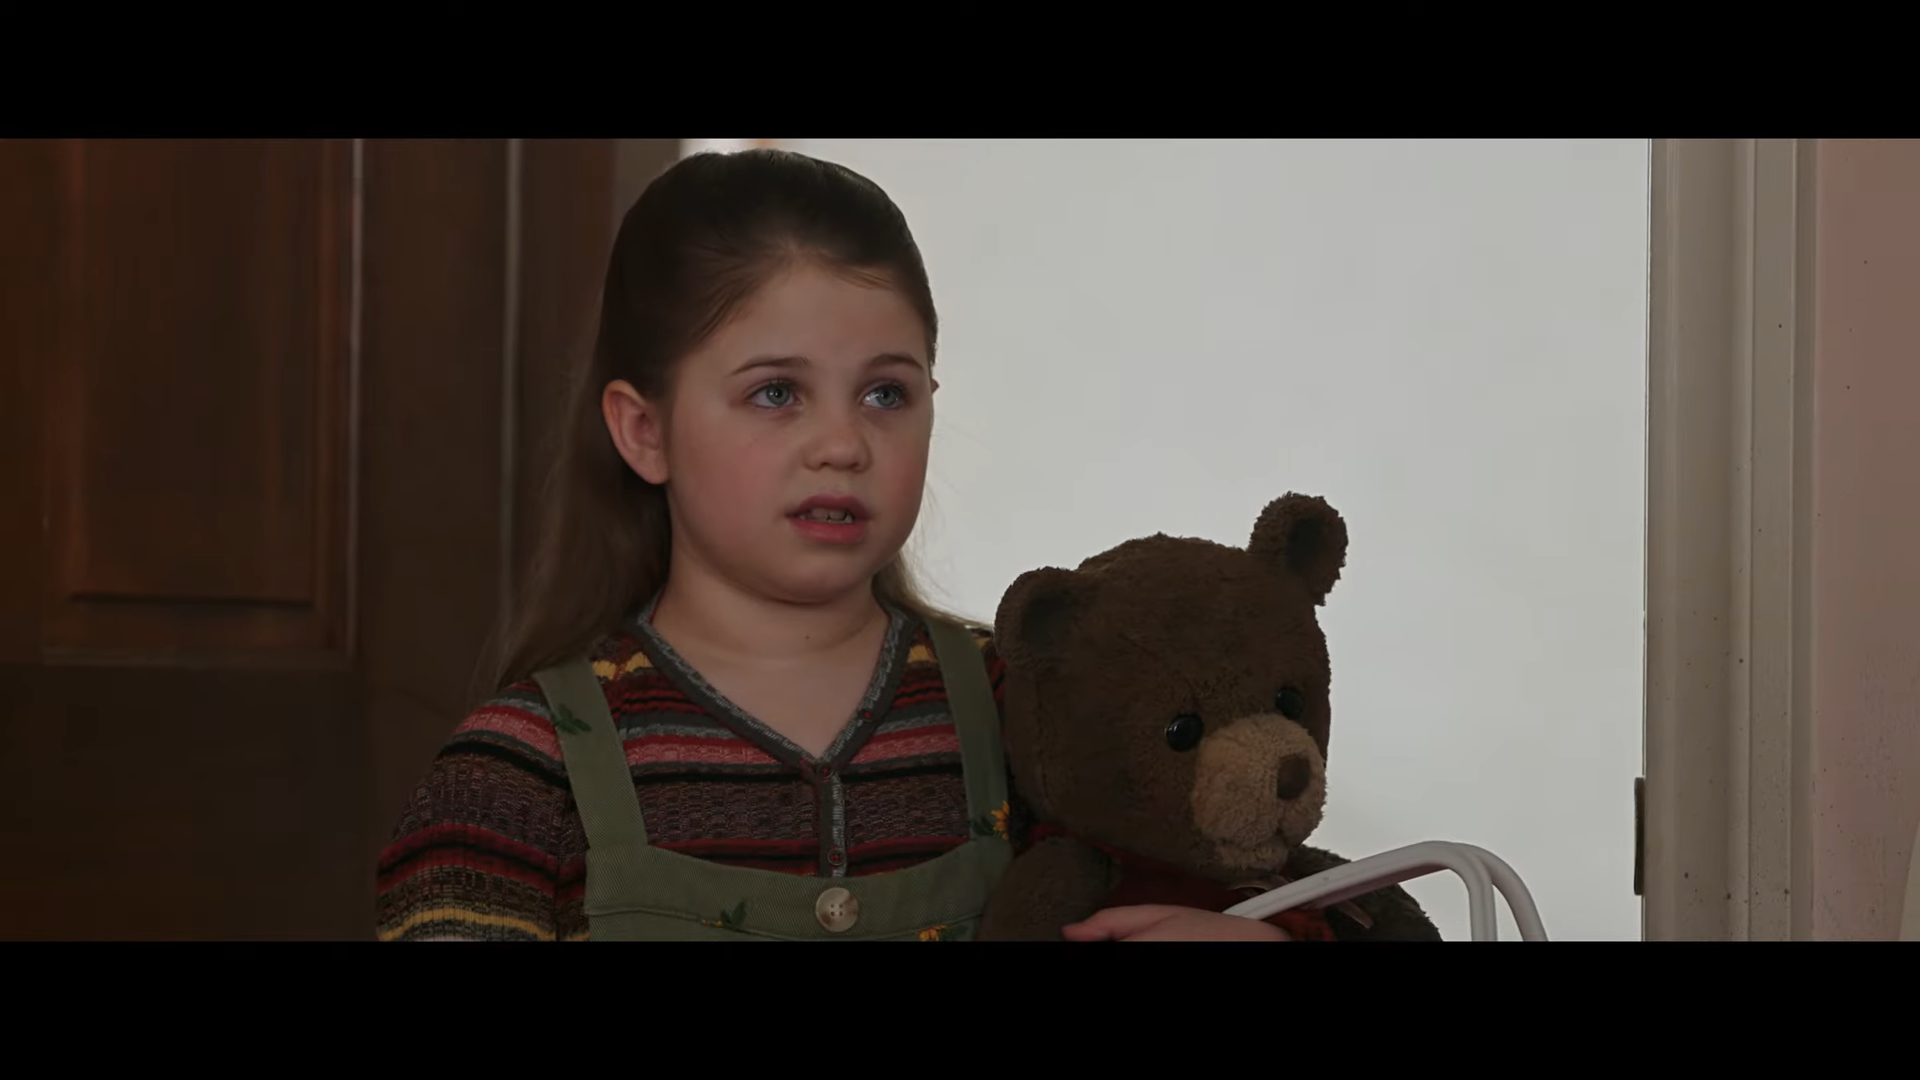 Imaginary' Trailer Teases a Terrifying Teddy Bear: Watch